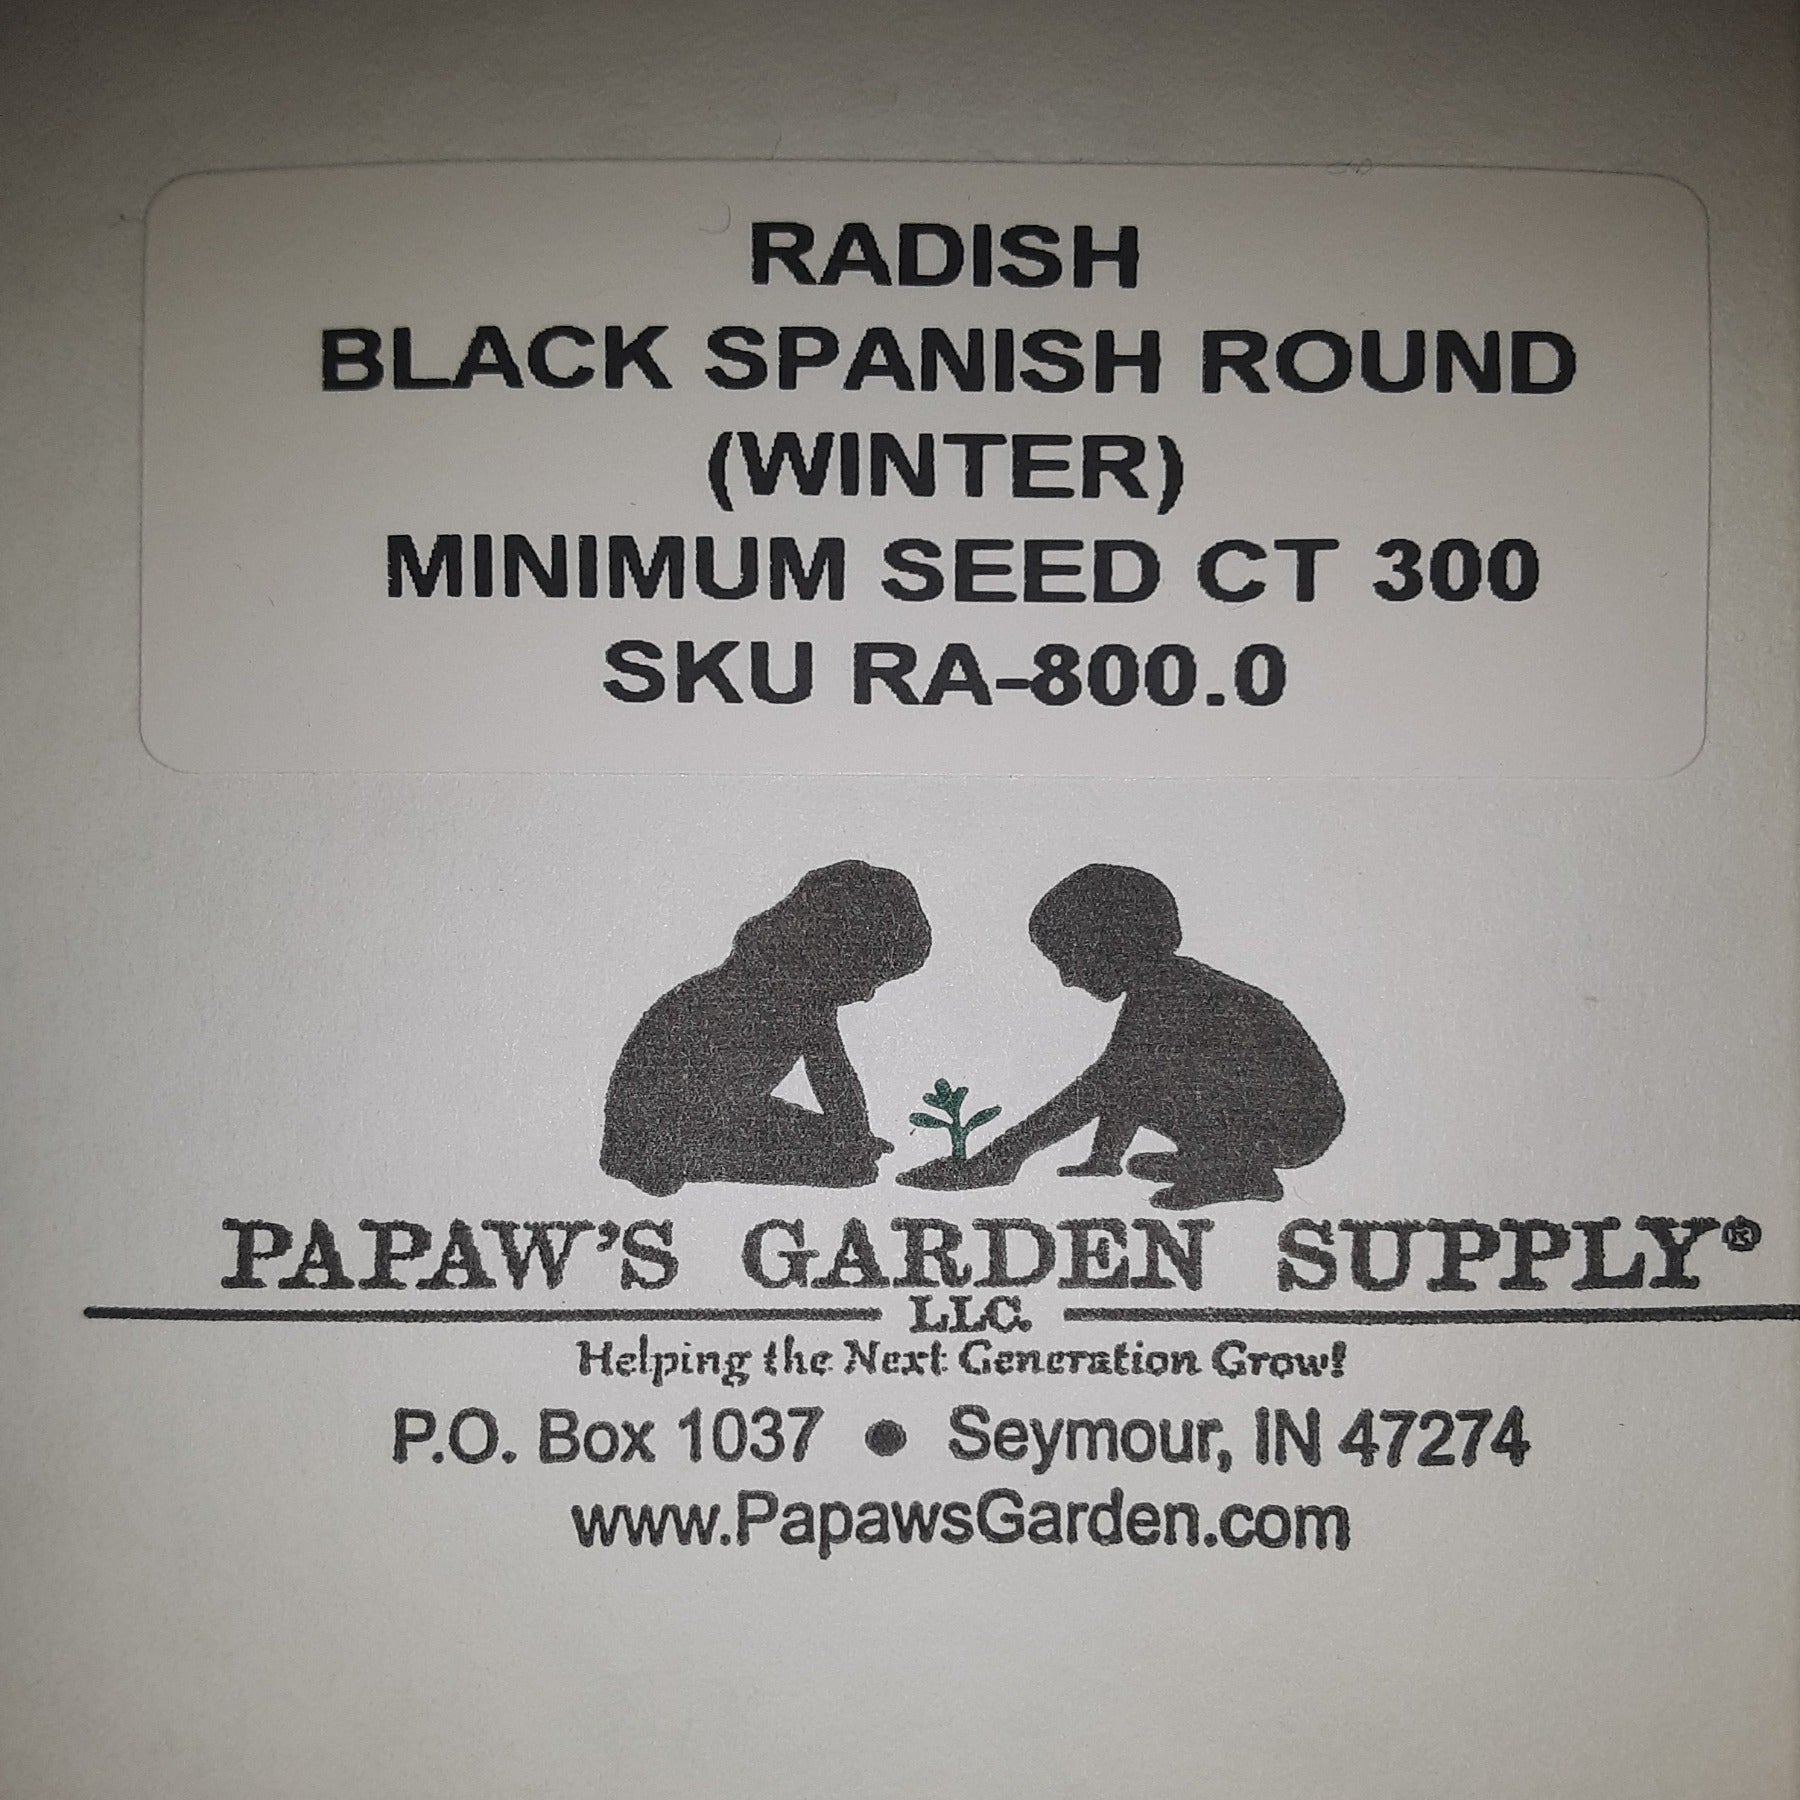 Black Spanish Round (Winter) Radish Seeds